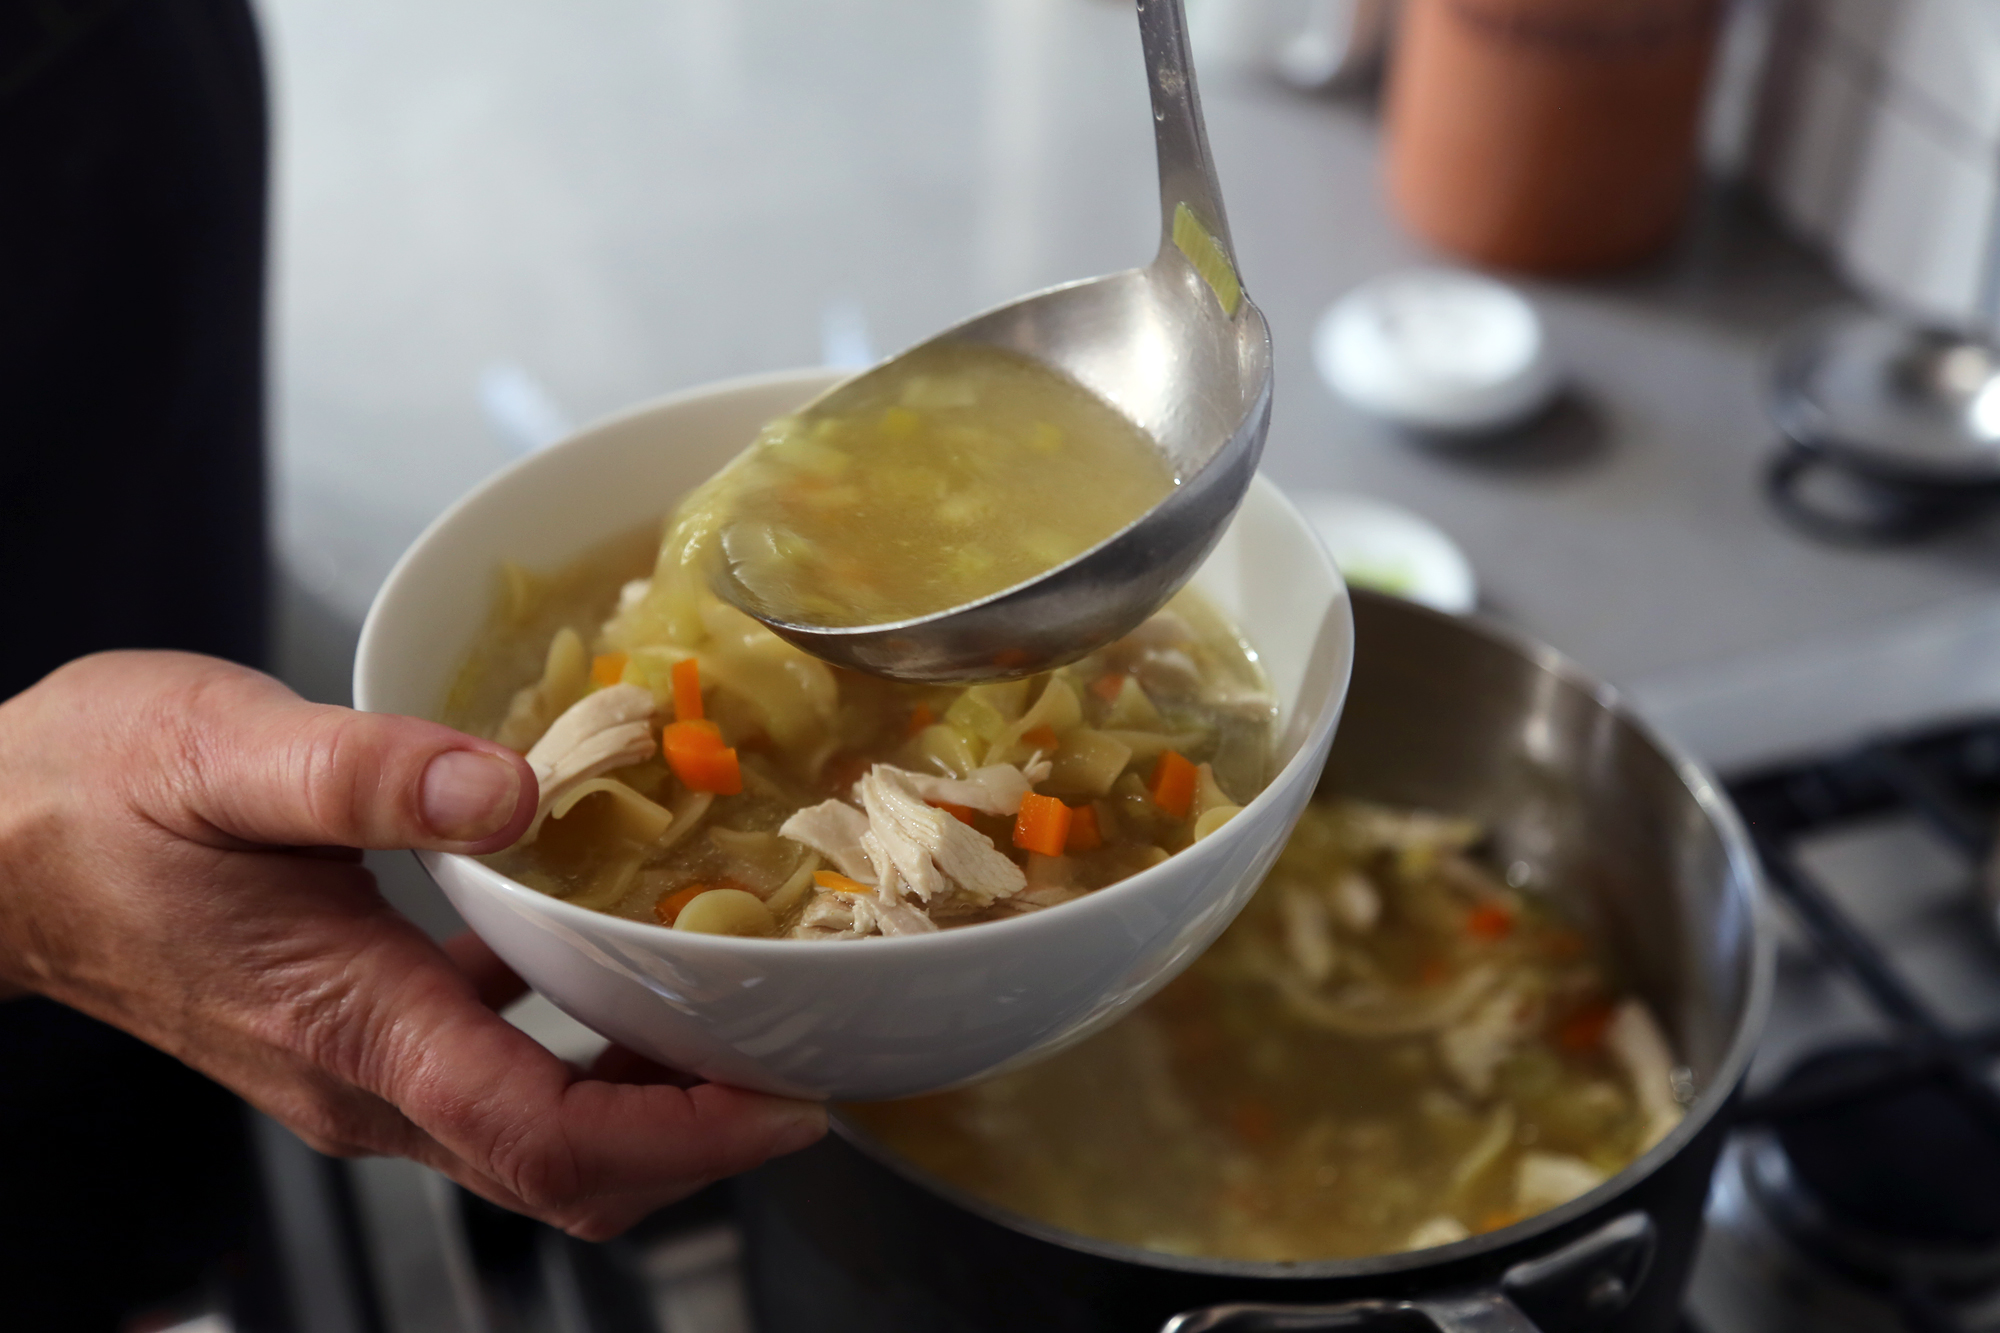 Ladle the hot soup into bowls.